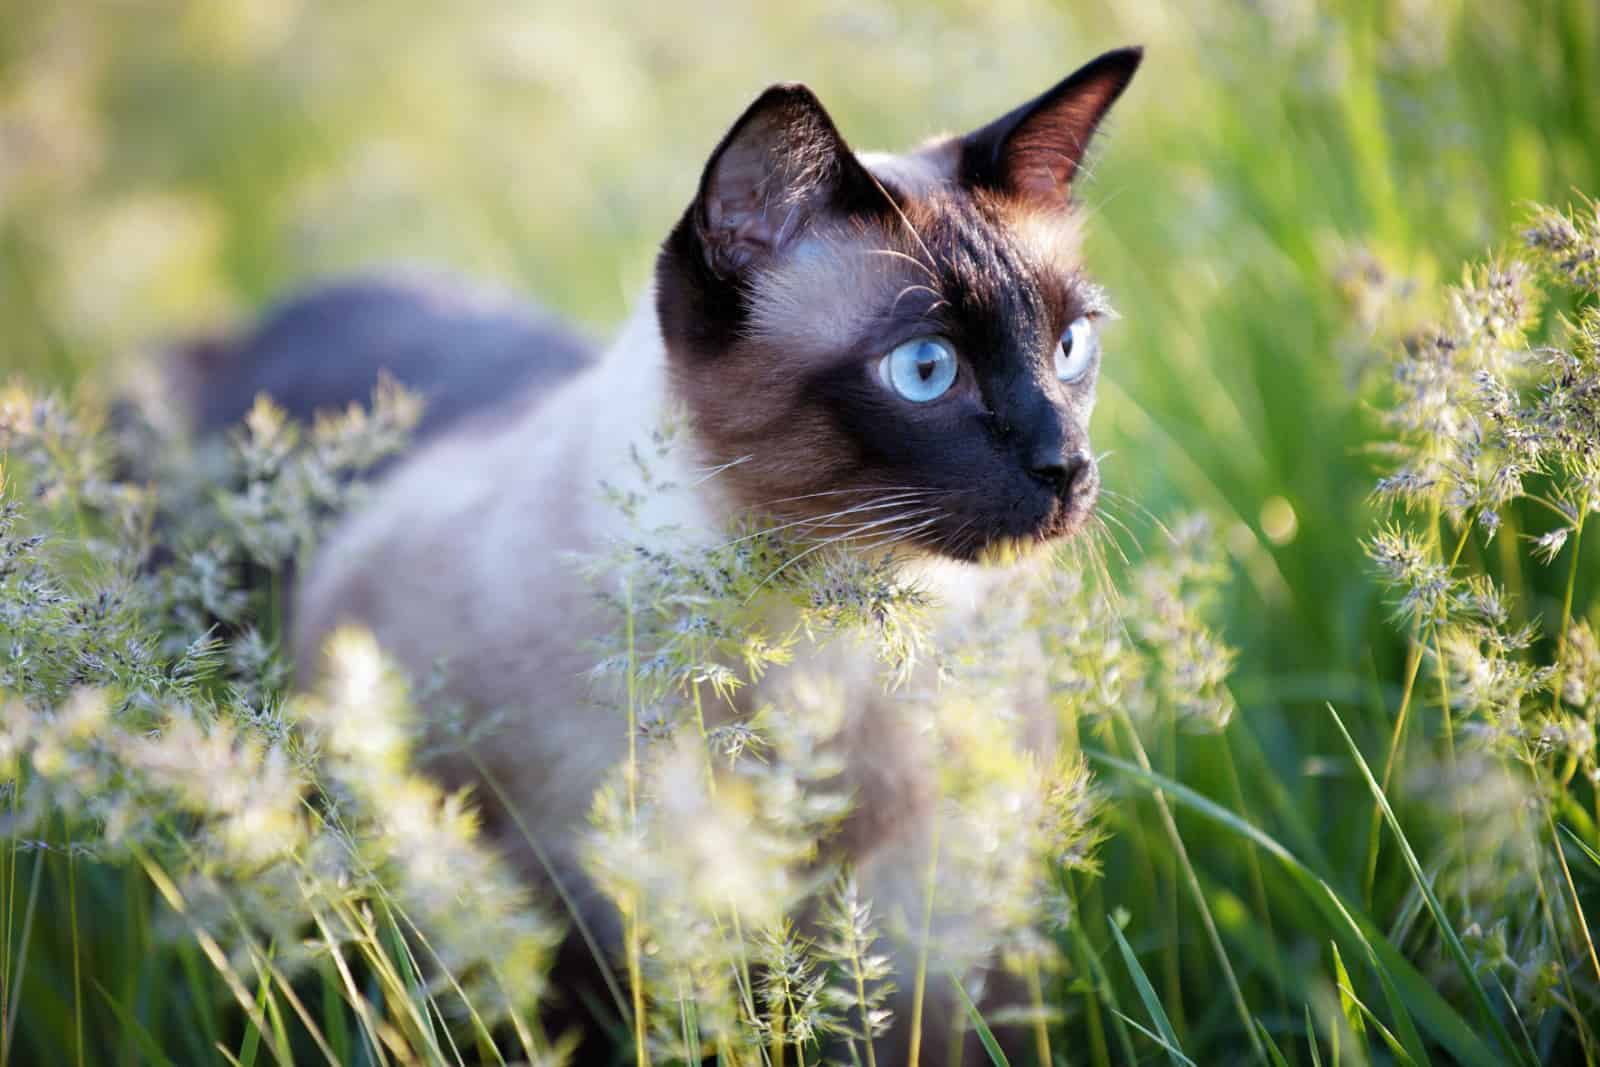 De mooie bruine kat, Siamees, met blauwgroene ogen ligt in een groen gras en bladeren